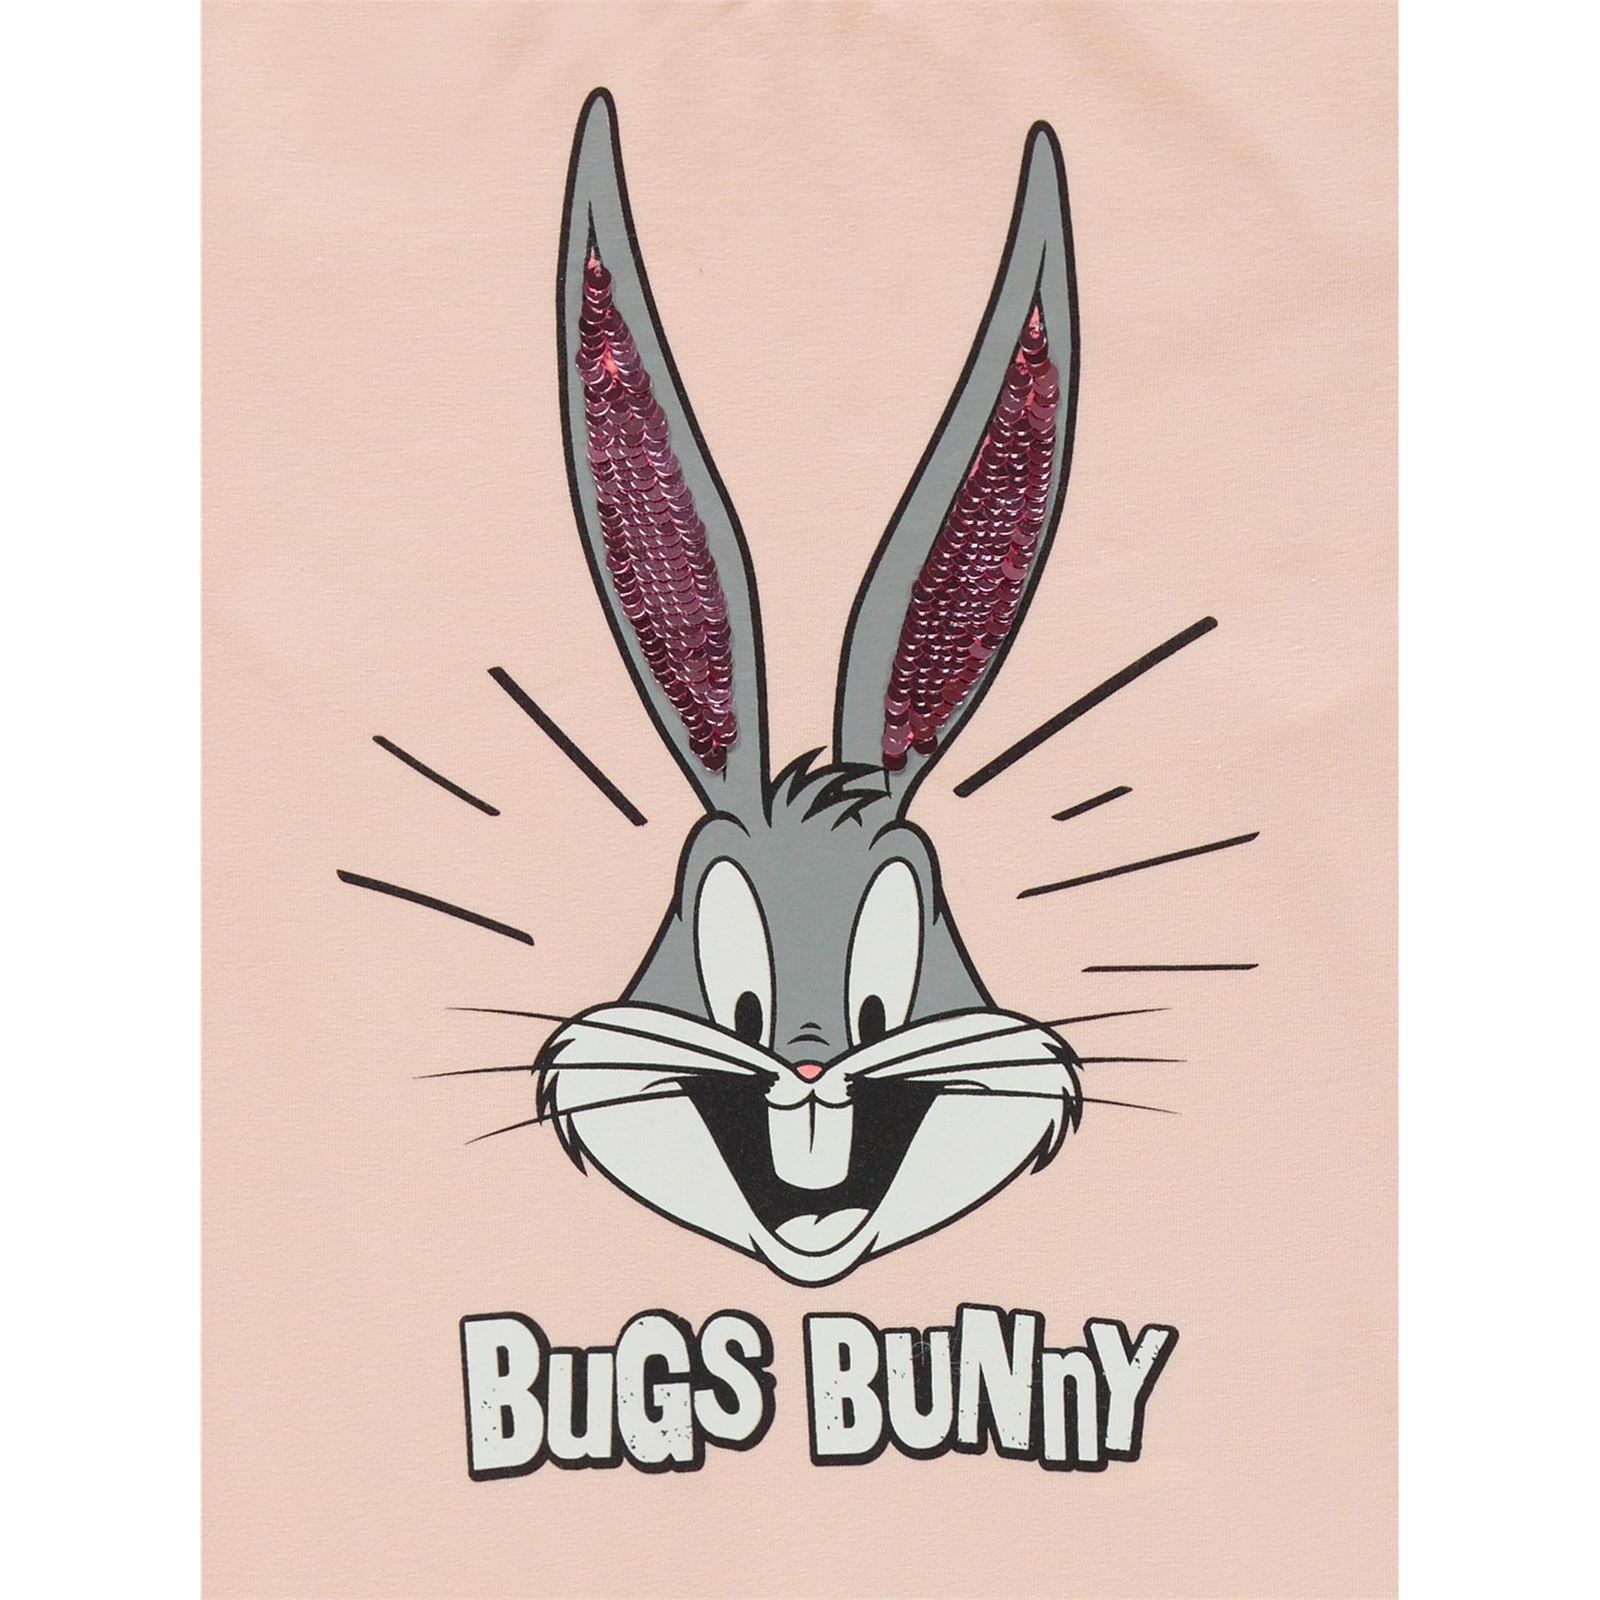 Bugs Bunny Kız Çocuk Sweatshirt 6-9 Yaş Somon